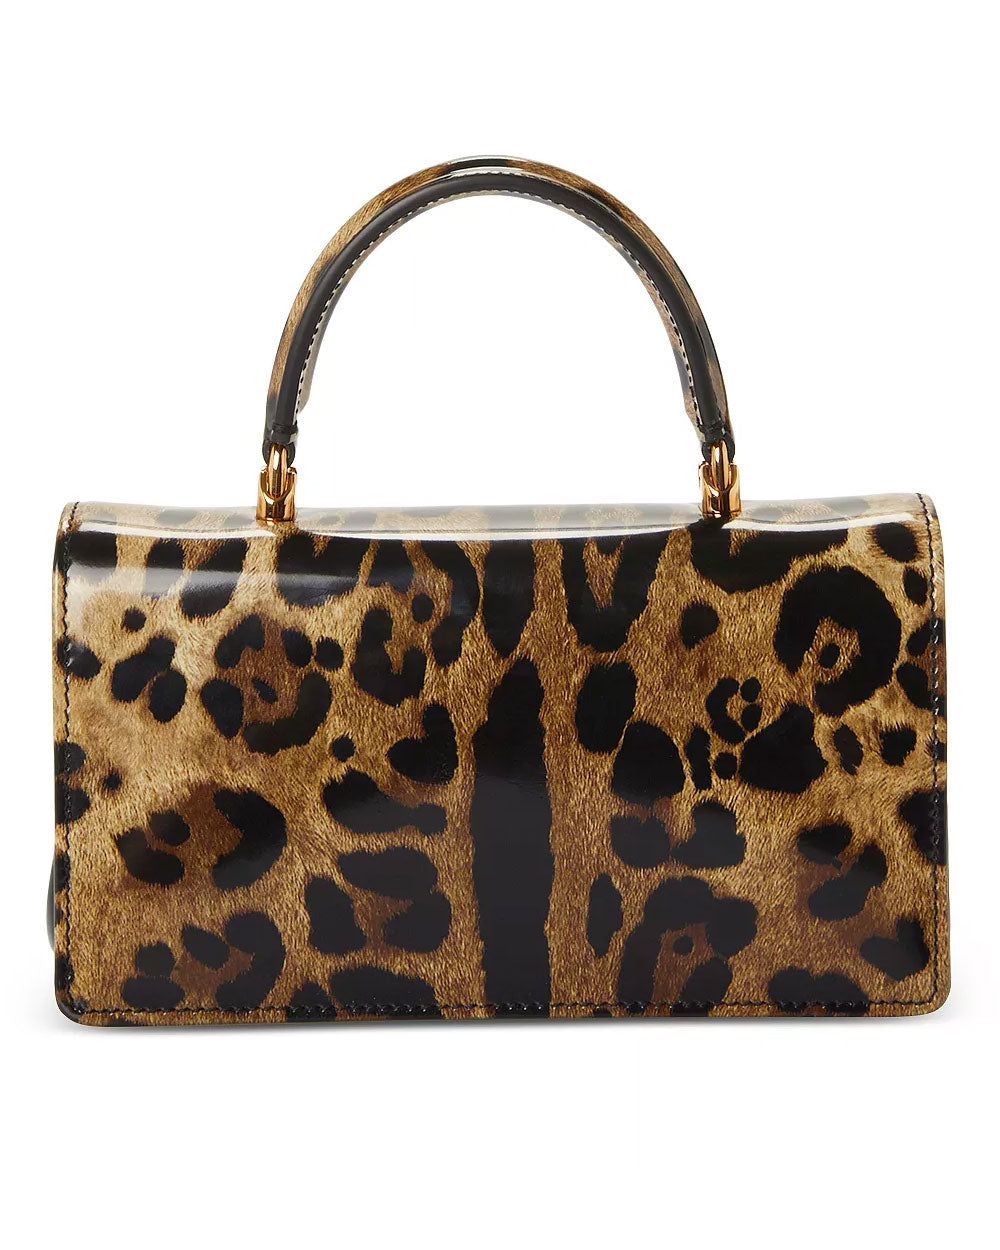 DG Girls Top Handle Bag in Leopard